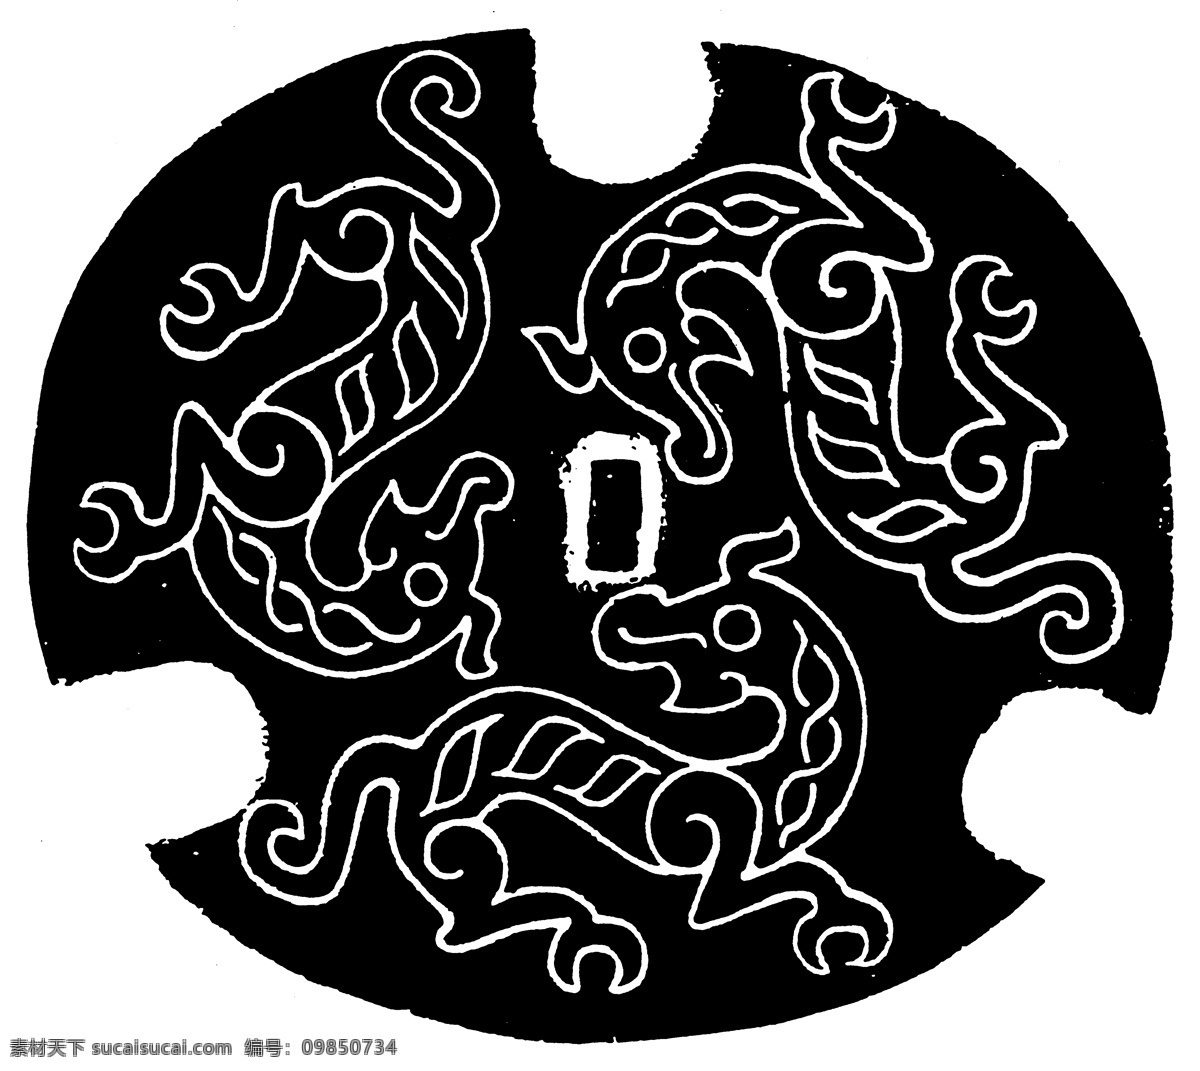 春秋战国图案 青铜器图案 中国 传统 图案 中国传统图案 设计素材 青铜纹饰 装饰图案 书画美术 黑色